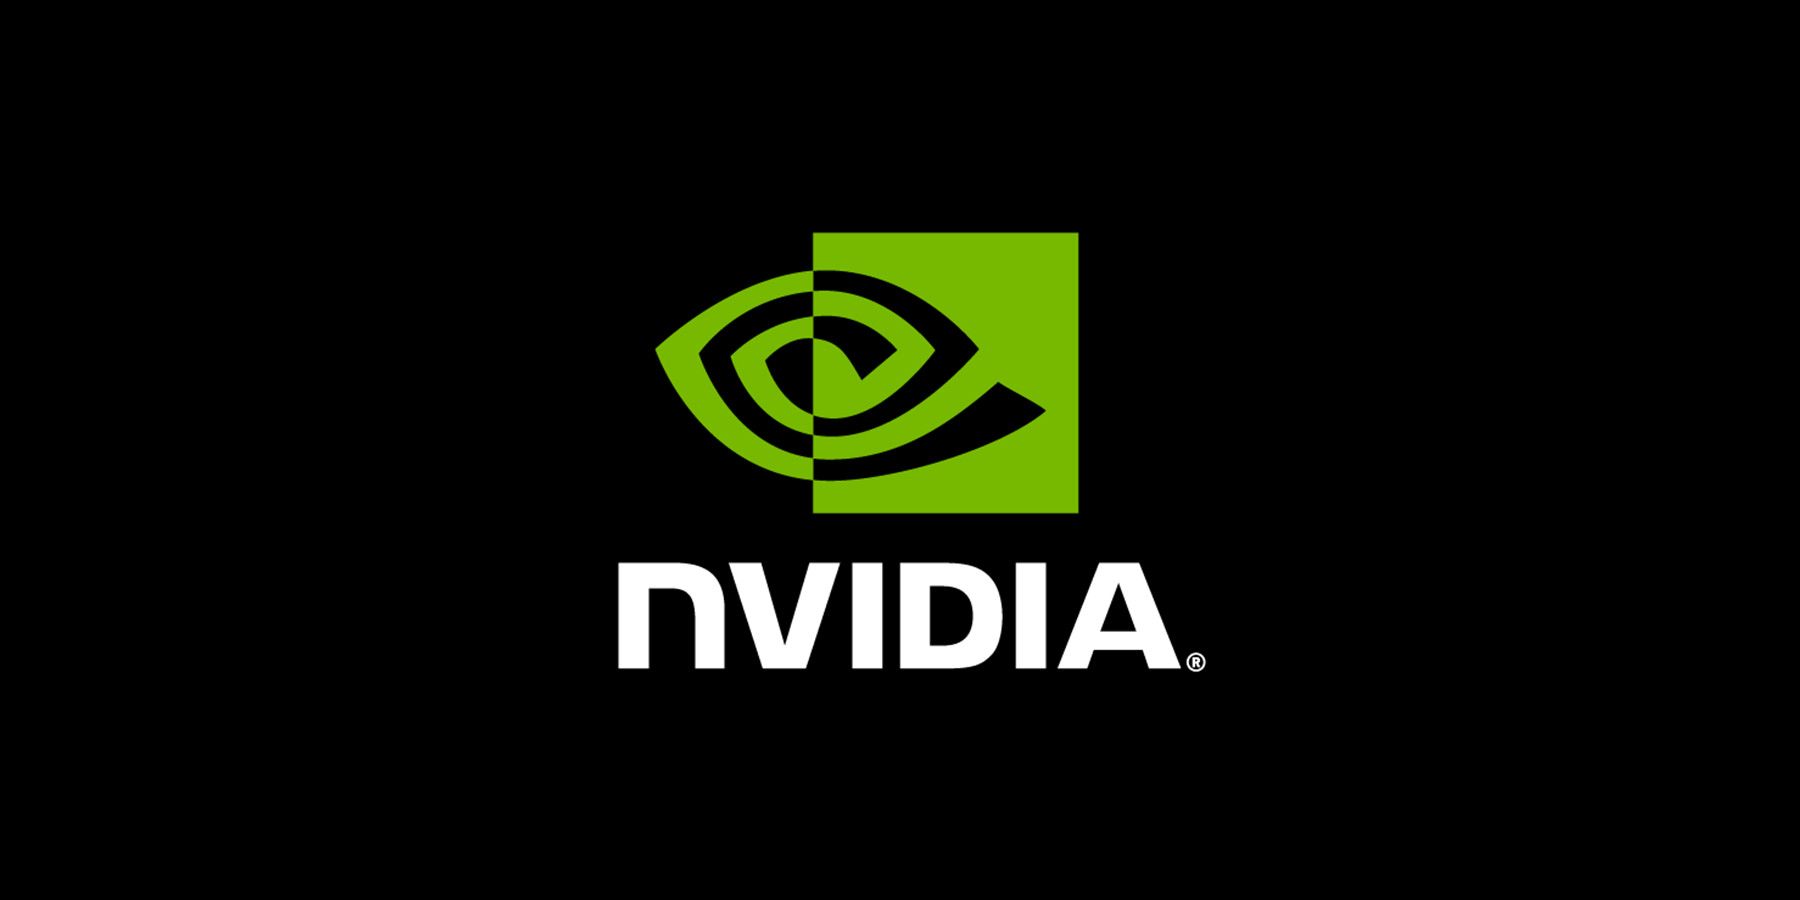 nvidia logo black background